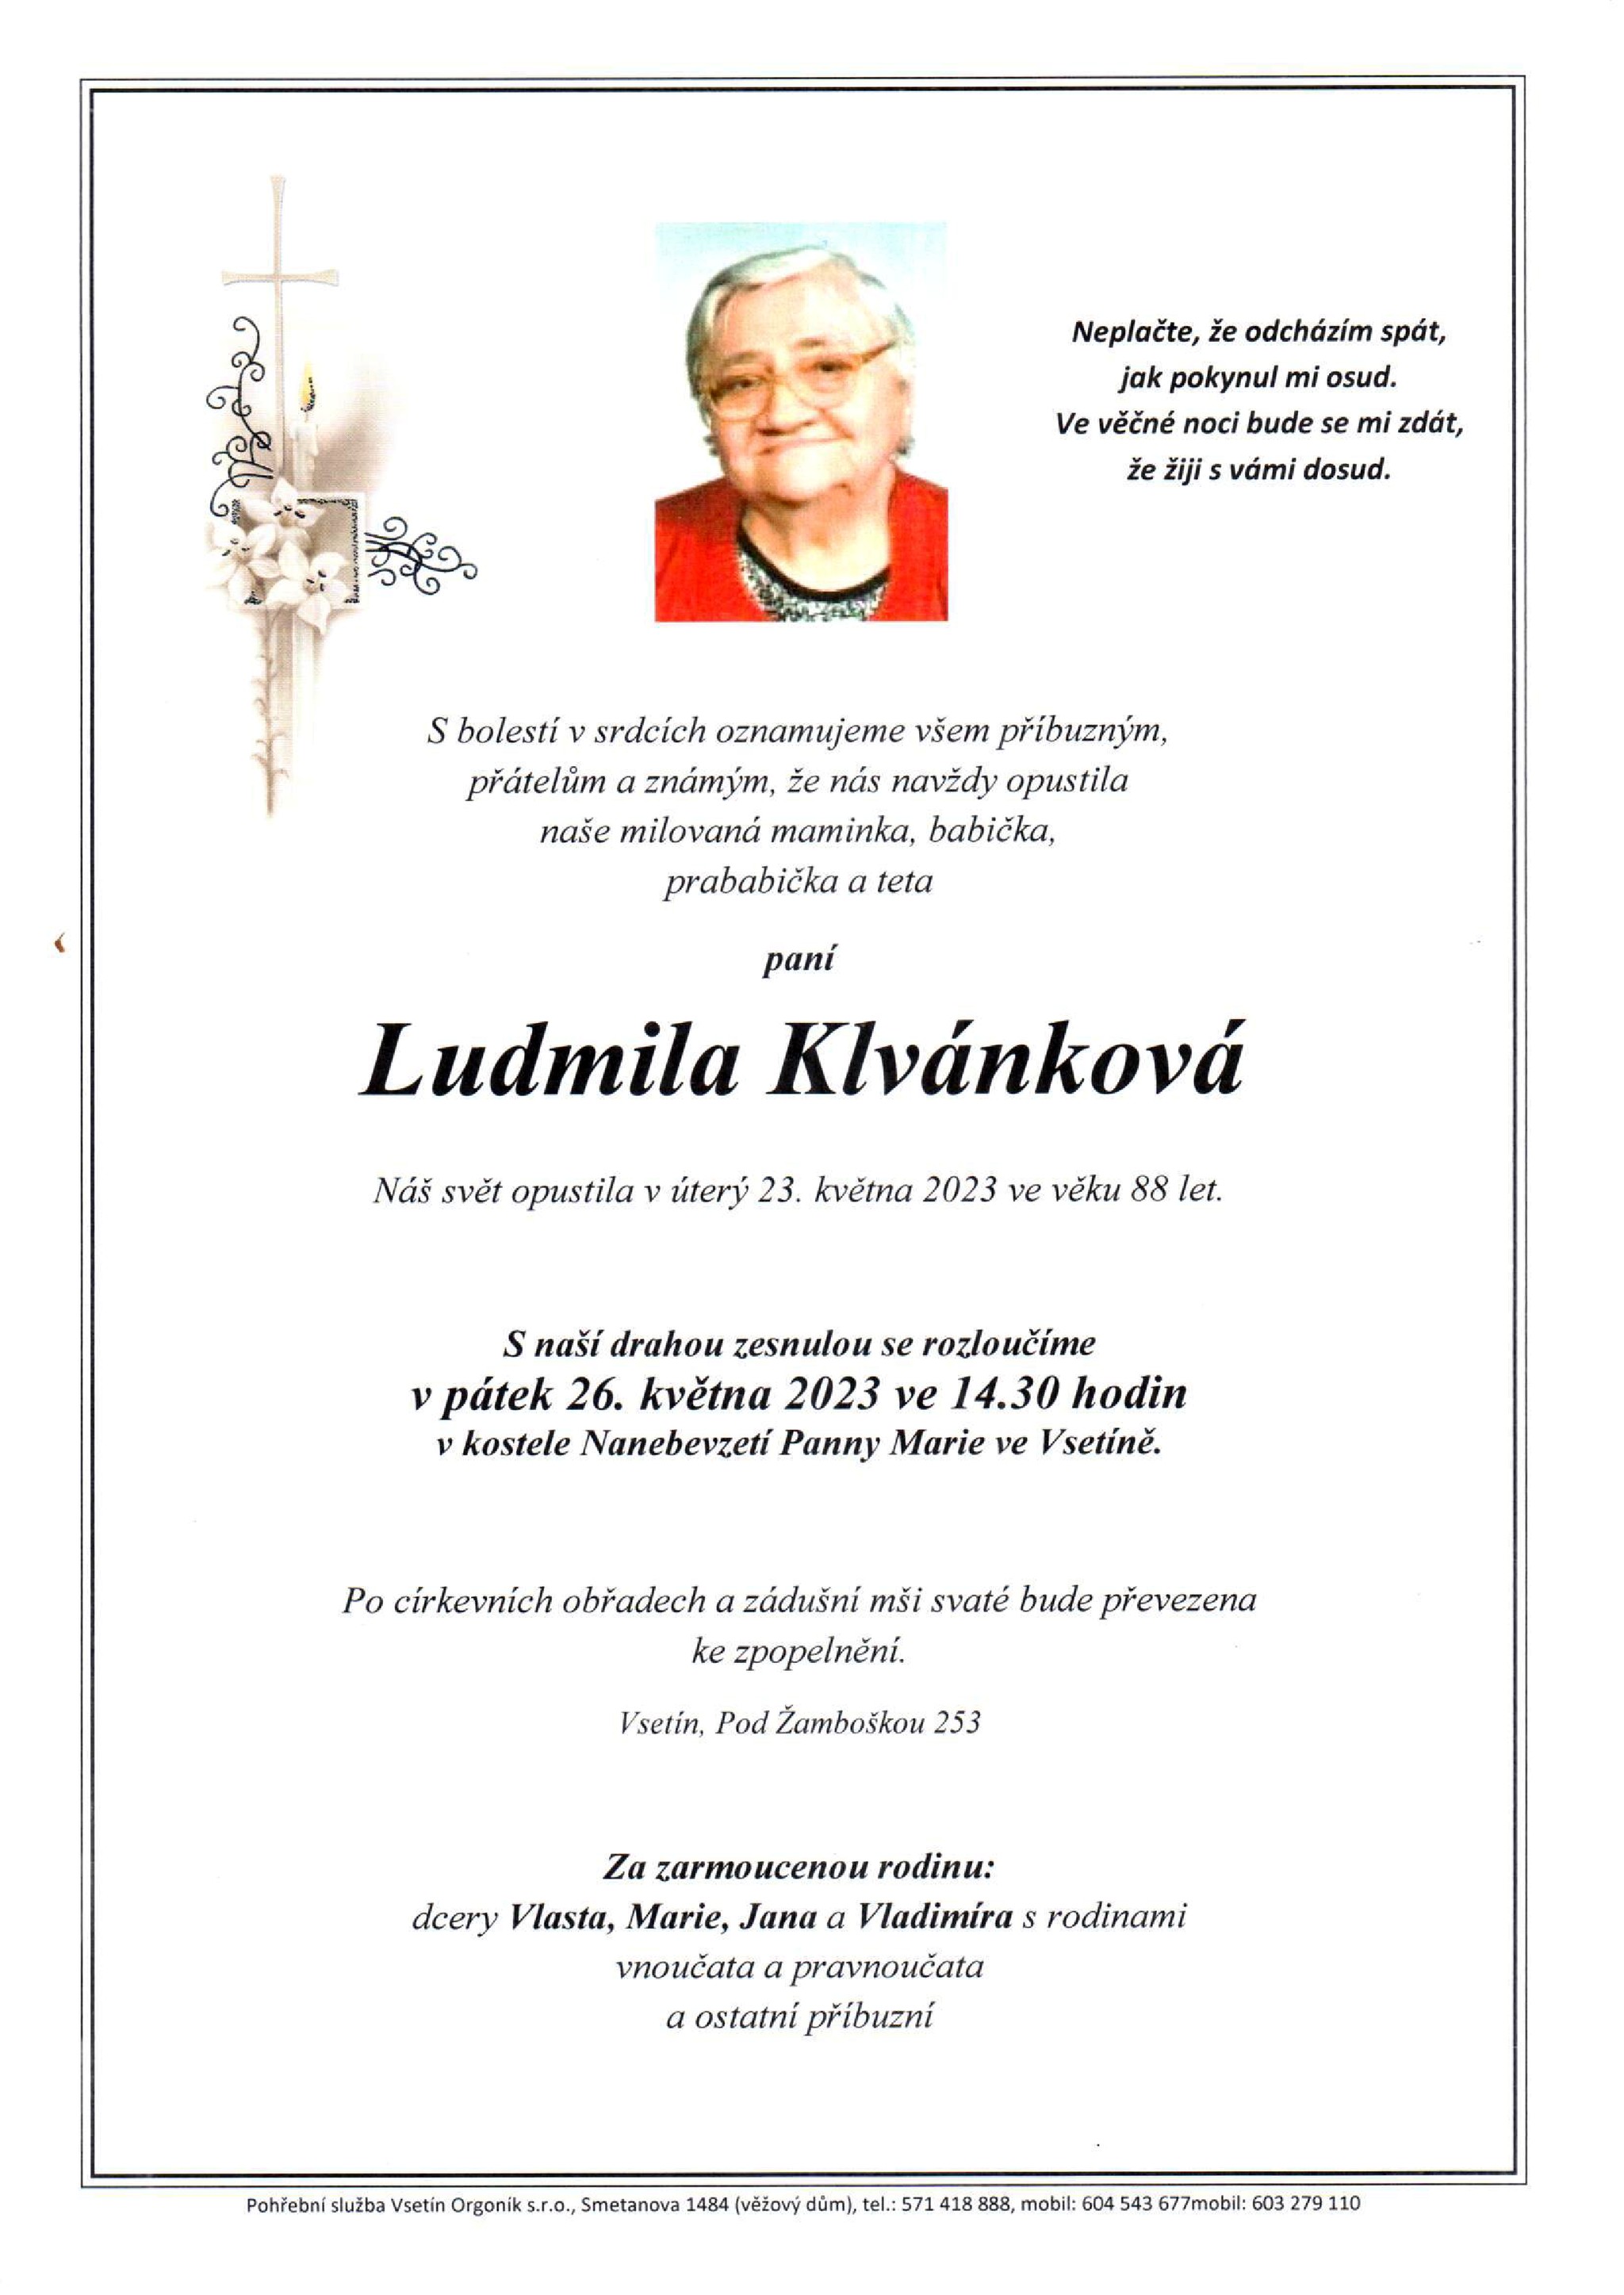 Ludmila Klvánková